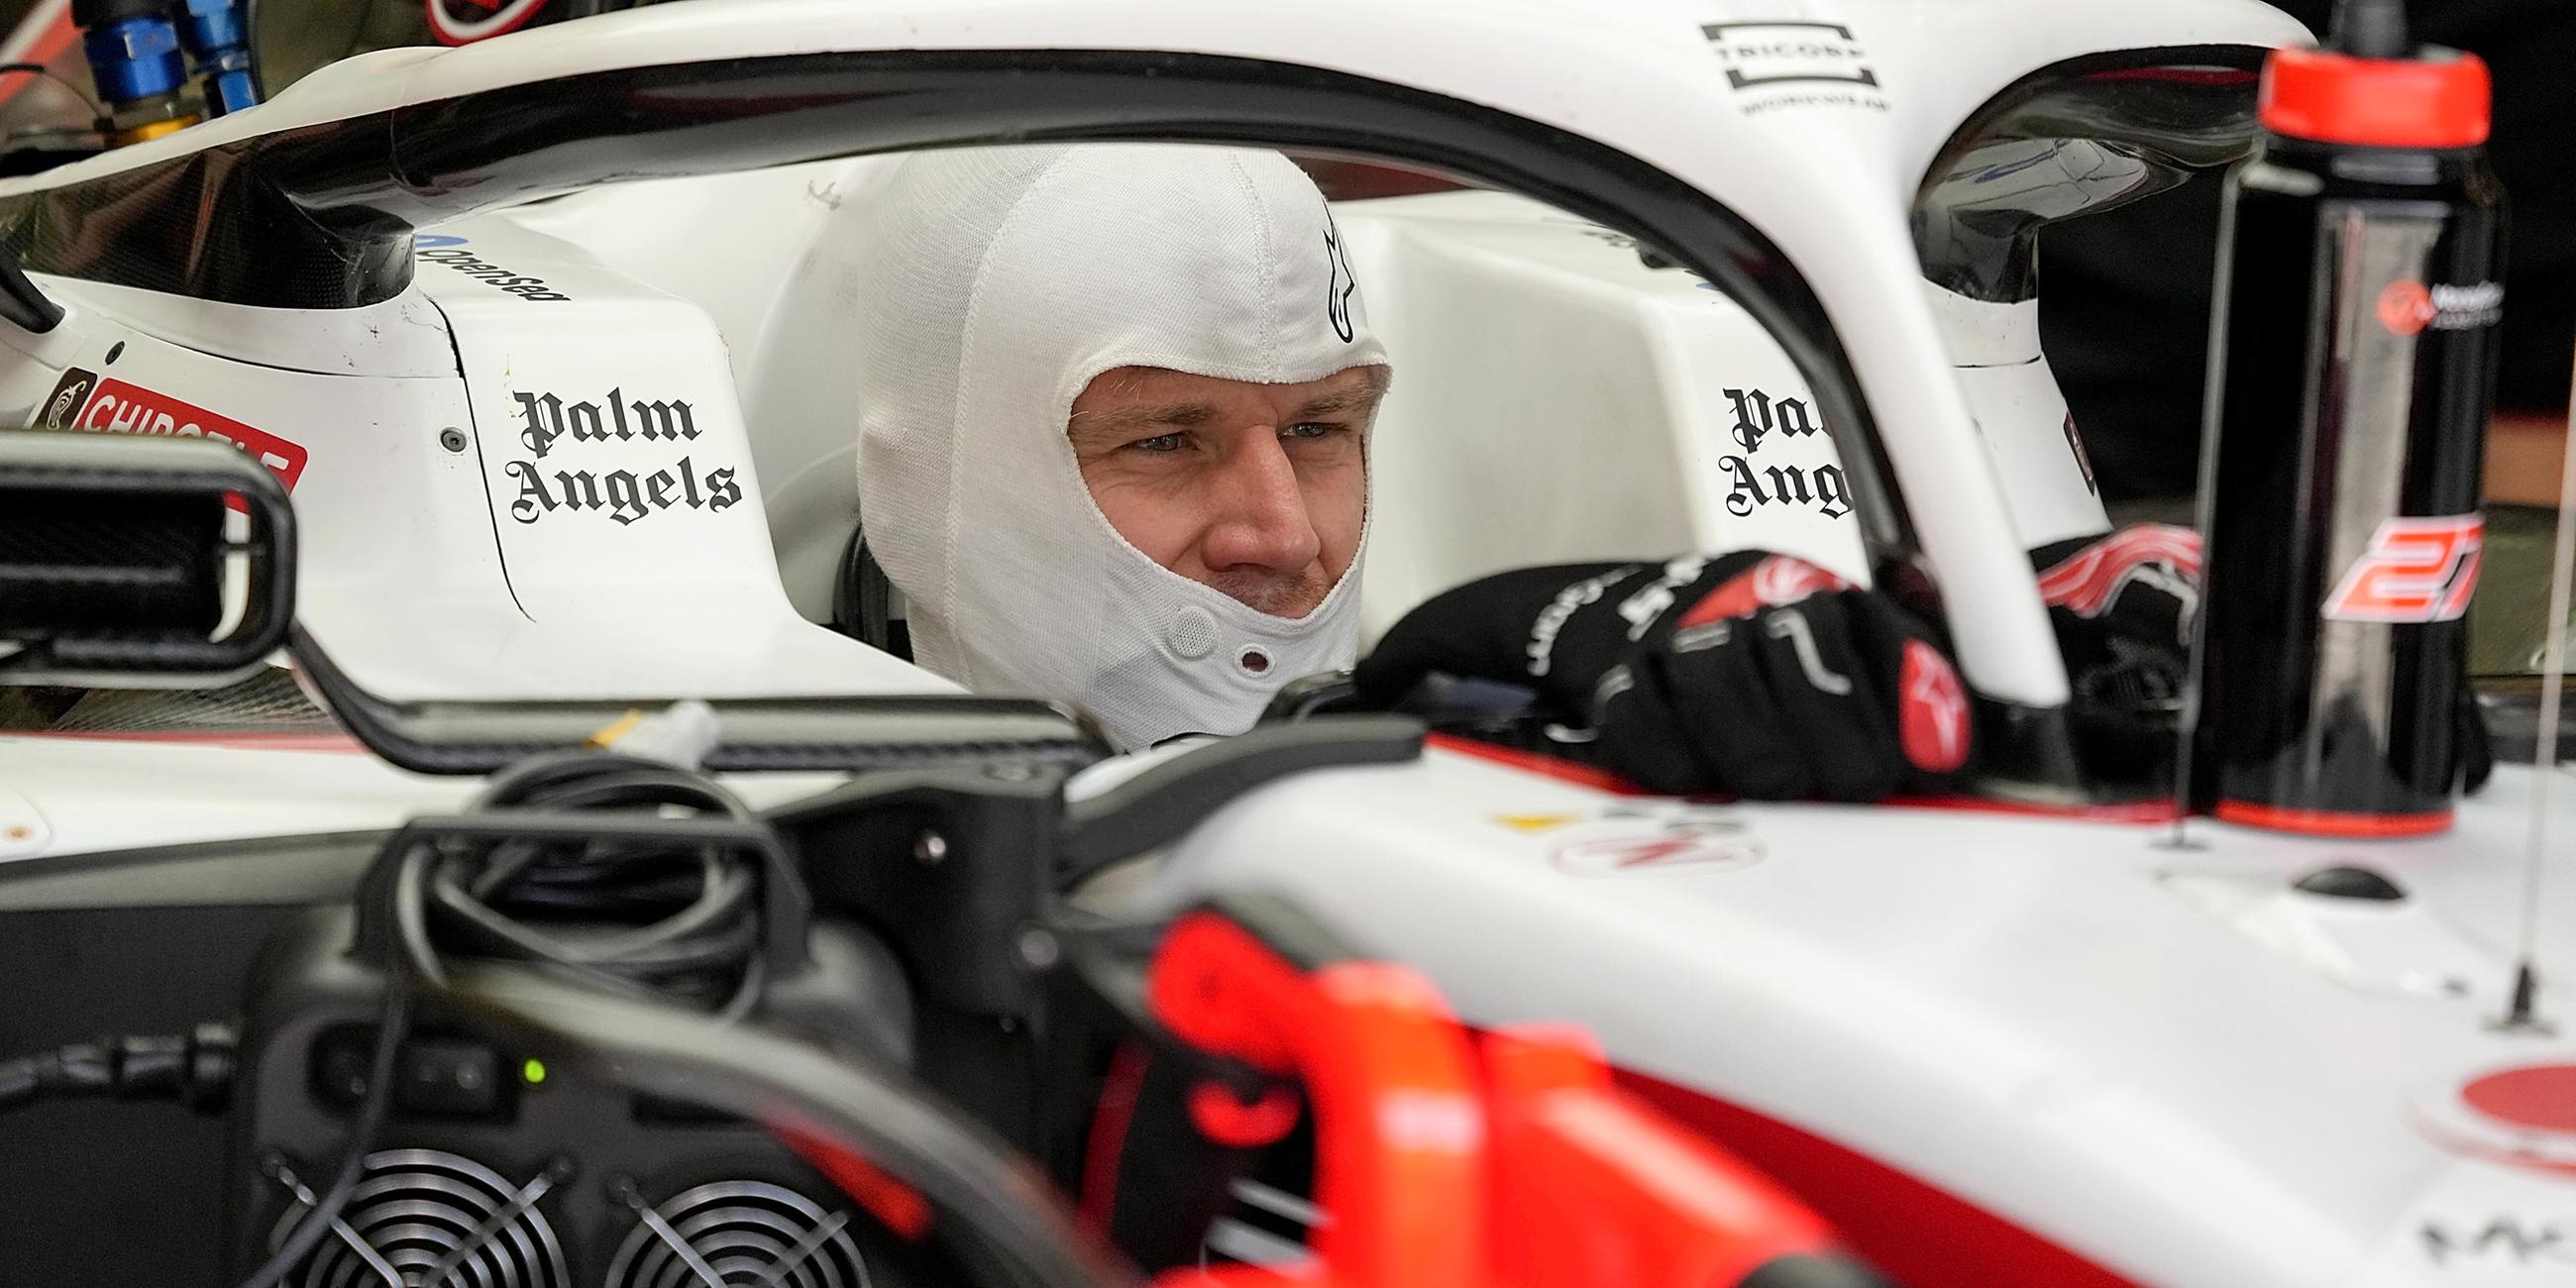 23.02.2023, Formel-1-Testfahrten in Bahrain. Nico Hülkenberg sitzt in seinem Rennwagen des Teams Haas.